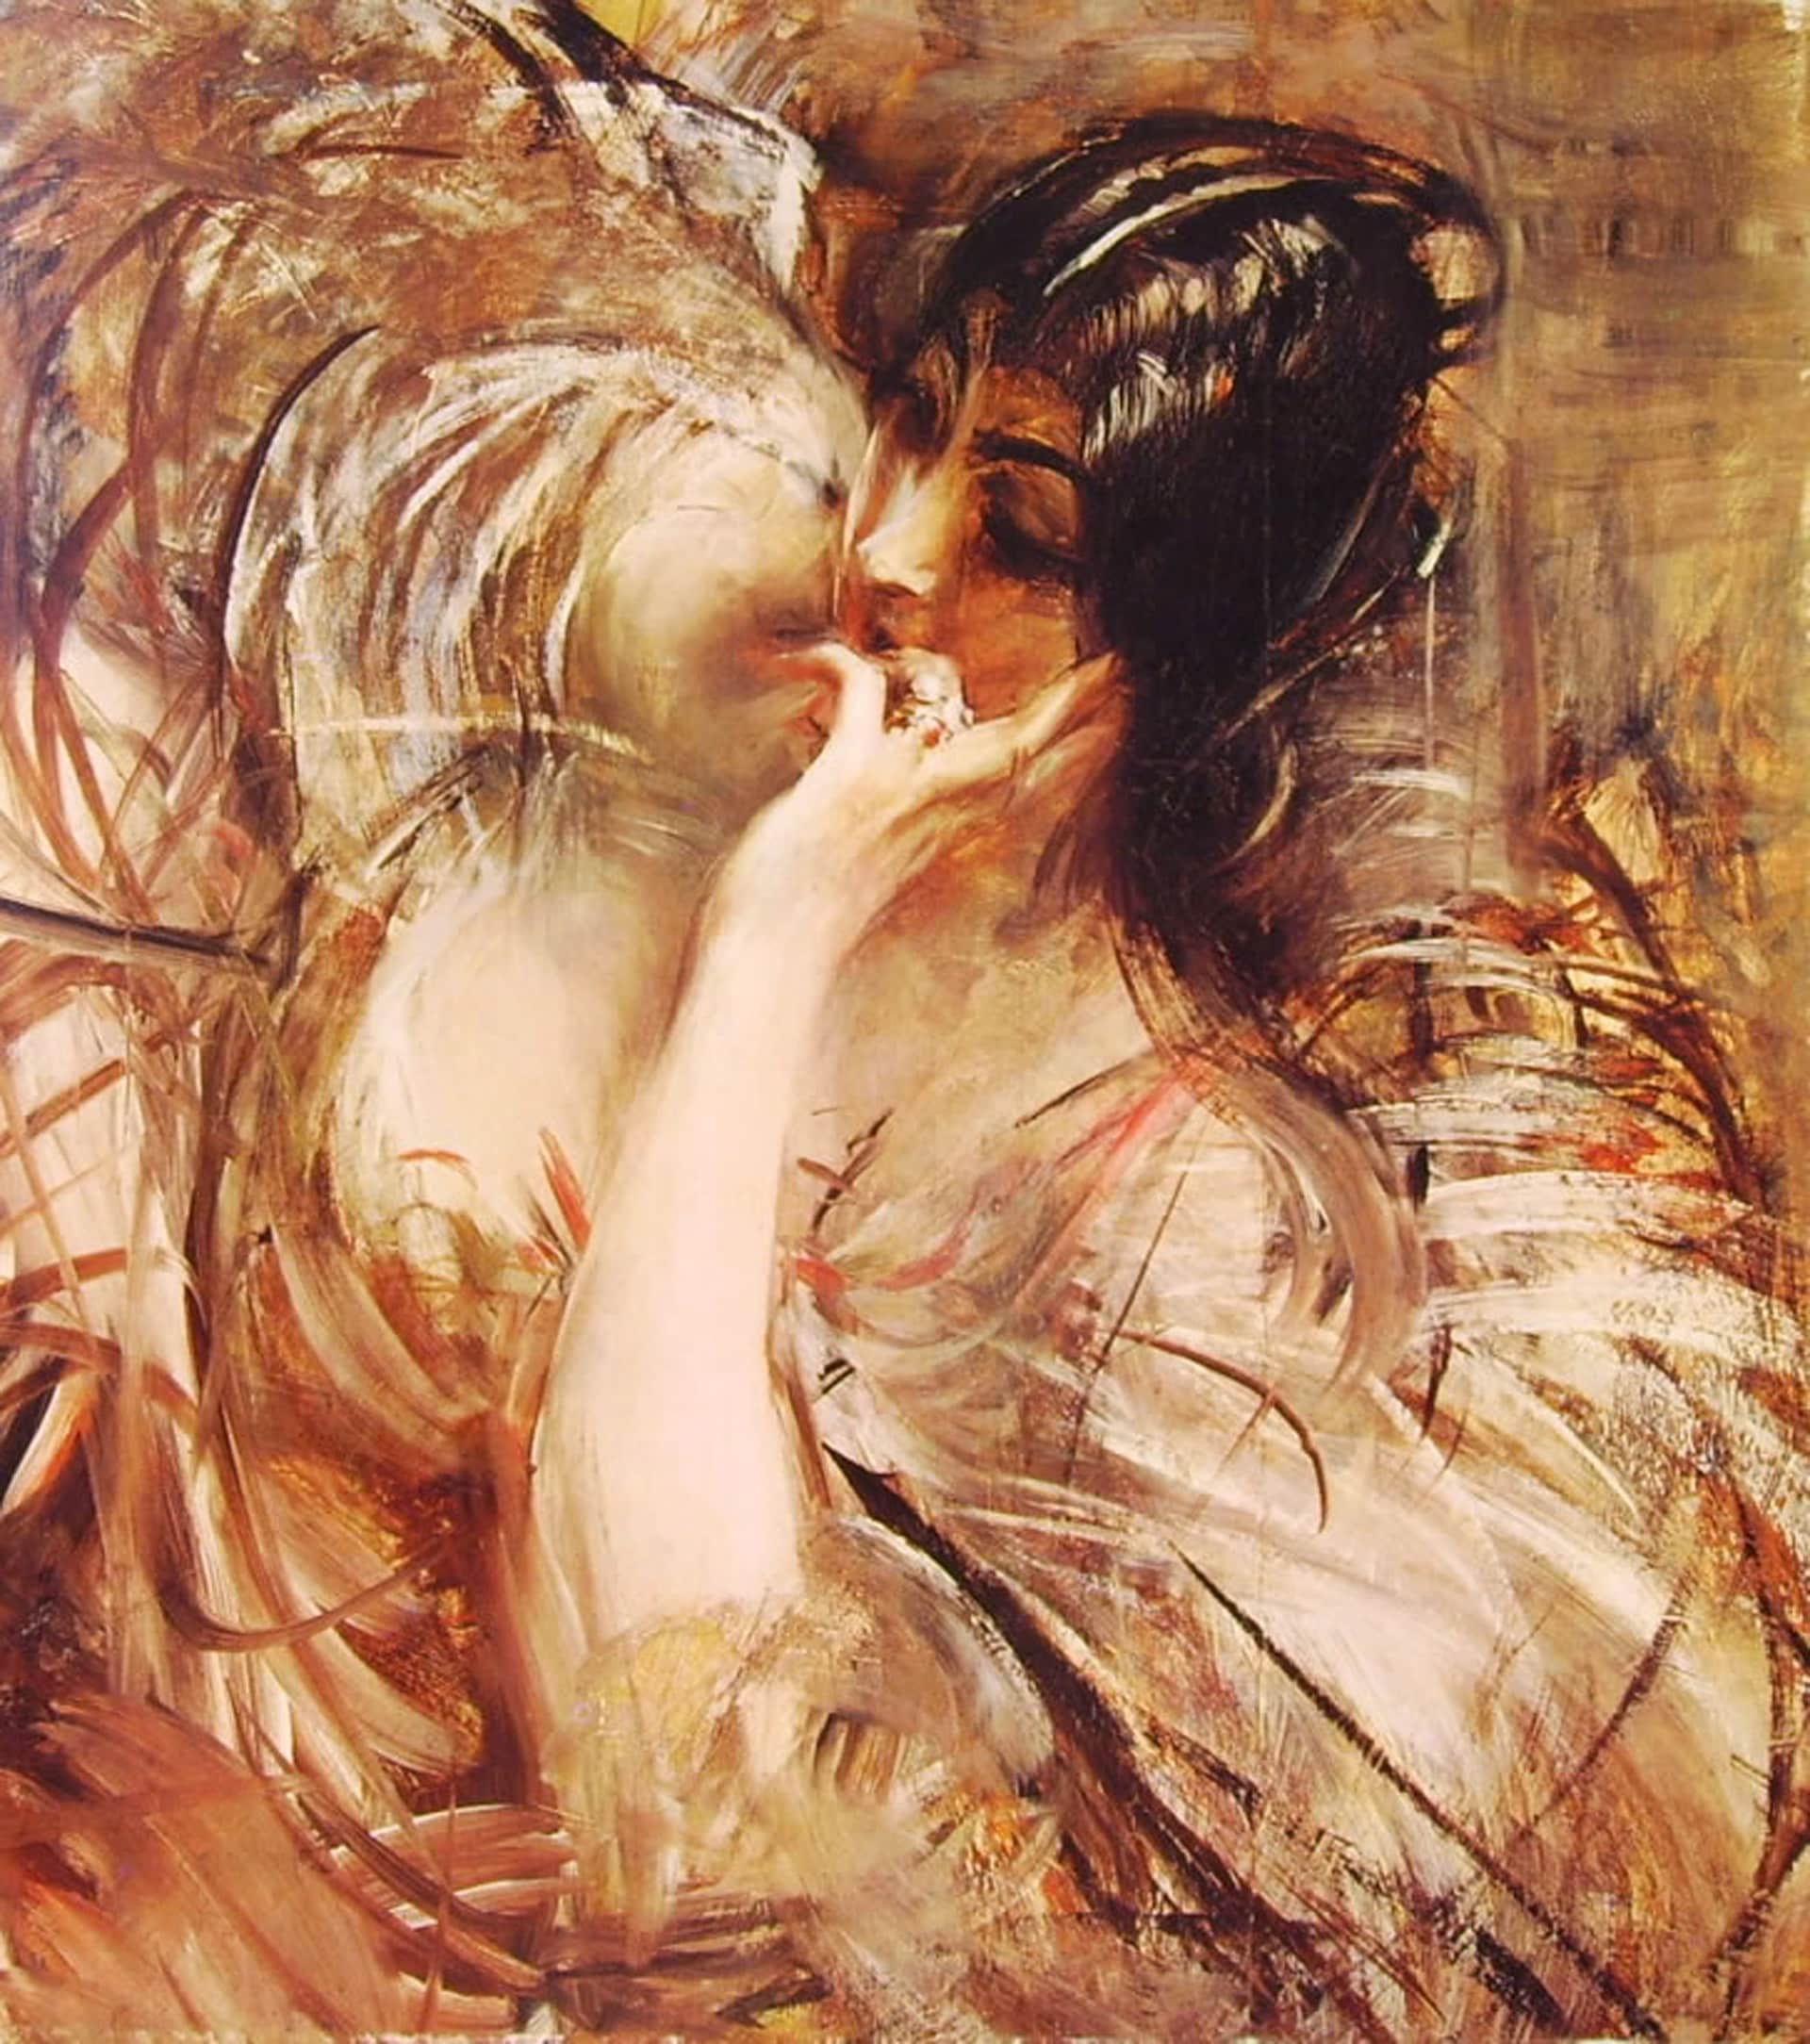 Giovanni Boldini "La camicetta di voile", 1906 ca. Olio su tela, 72 x 63,5 cm. Collezione Sacerdoti Ferrario. Courtesy Museo Archives Giovanni Boldini Macchiaioli